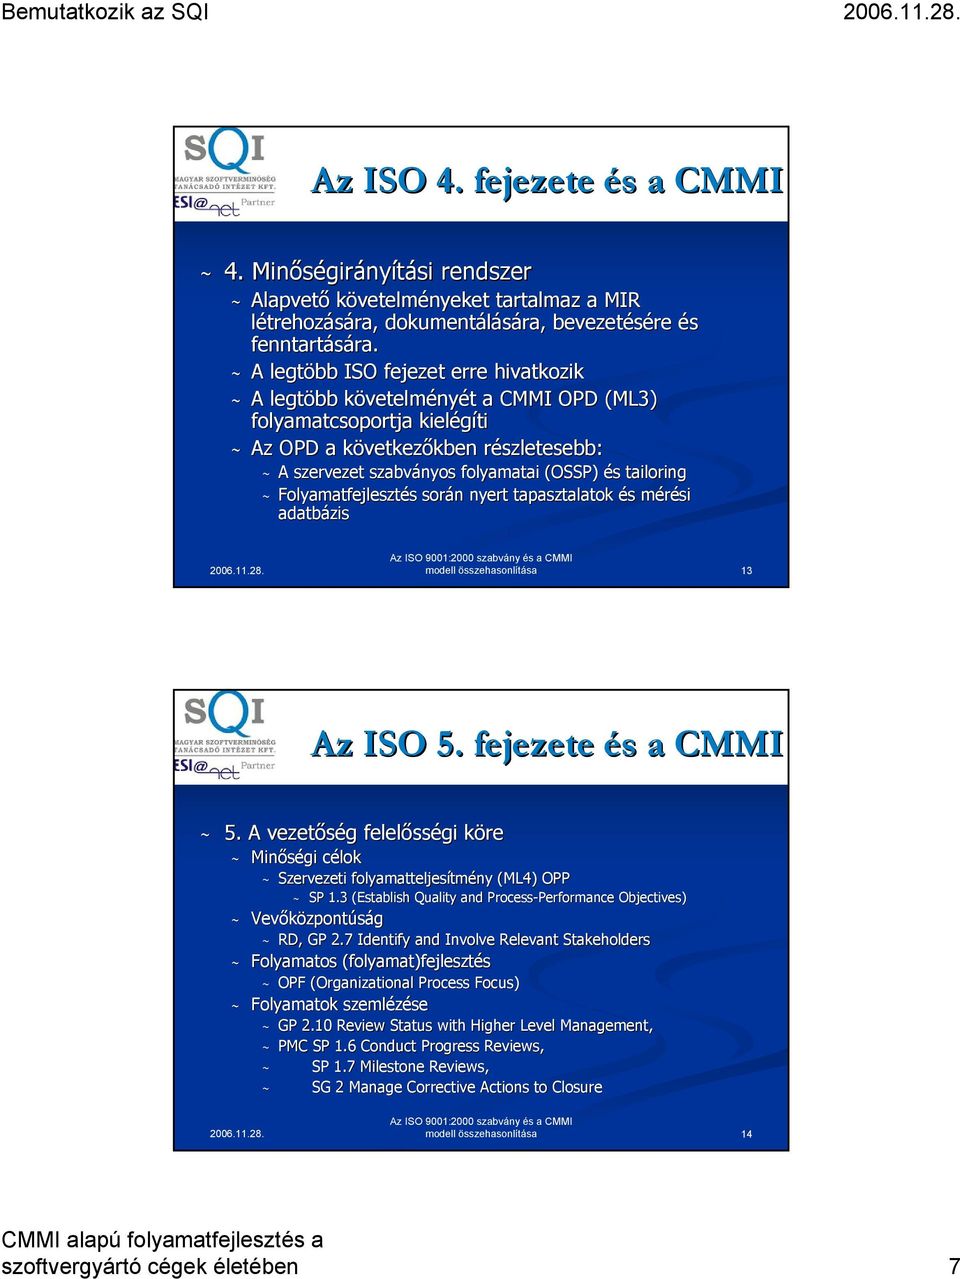 ~ A legtöbb ISO fejezet erre hivatkozik ~ A legtöbb követelmk vetelményét t a CMMI OPD (ML3) folyamatcsoportja kielégíti ~ Az OPD a következk vetkezőkben kben részletesebb: r ~ A szervezet szabványos